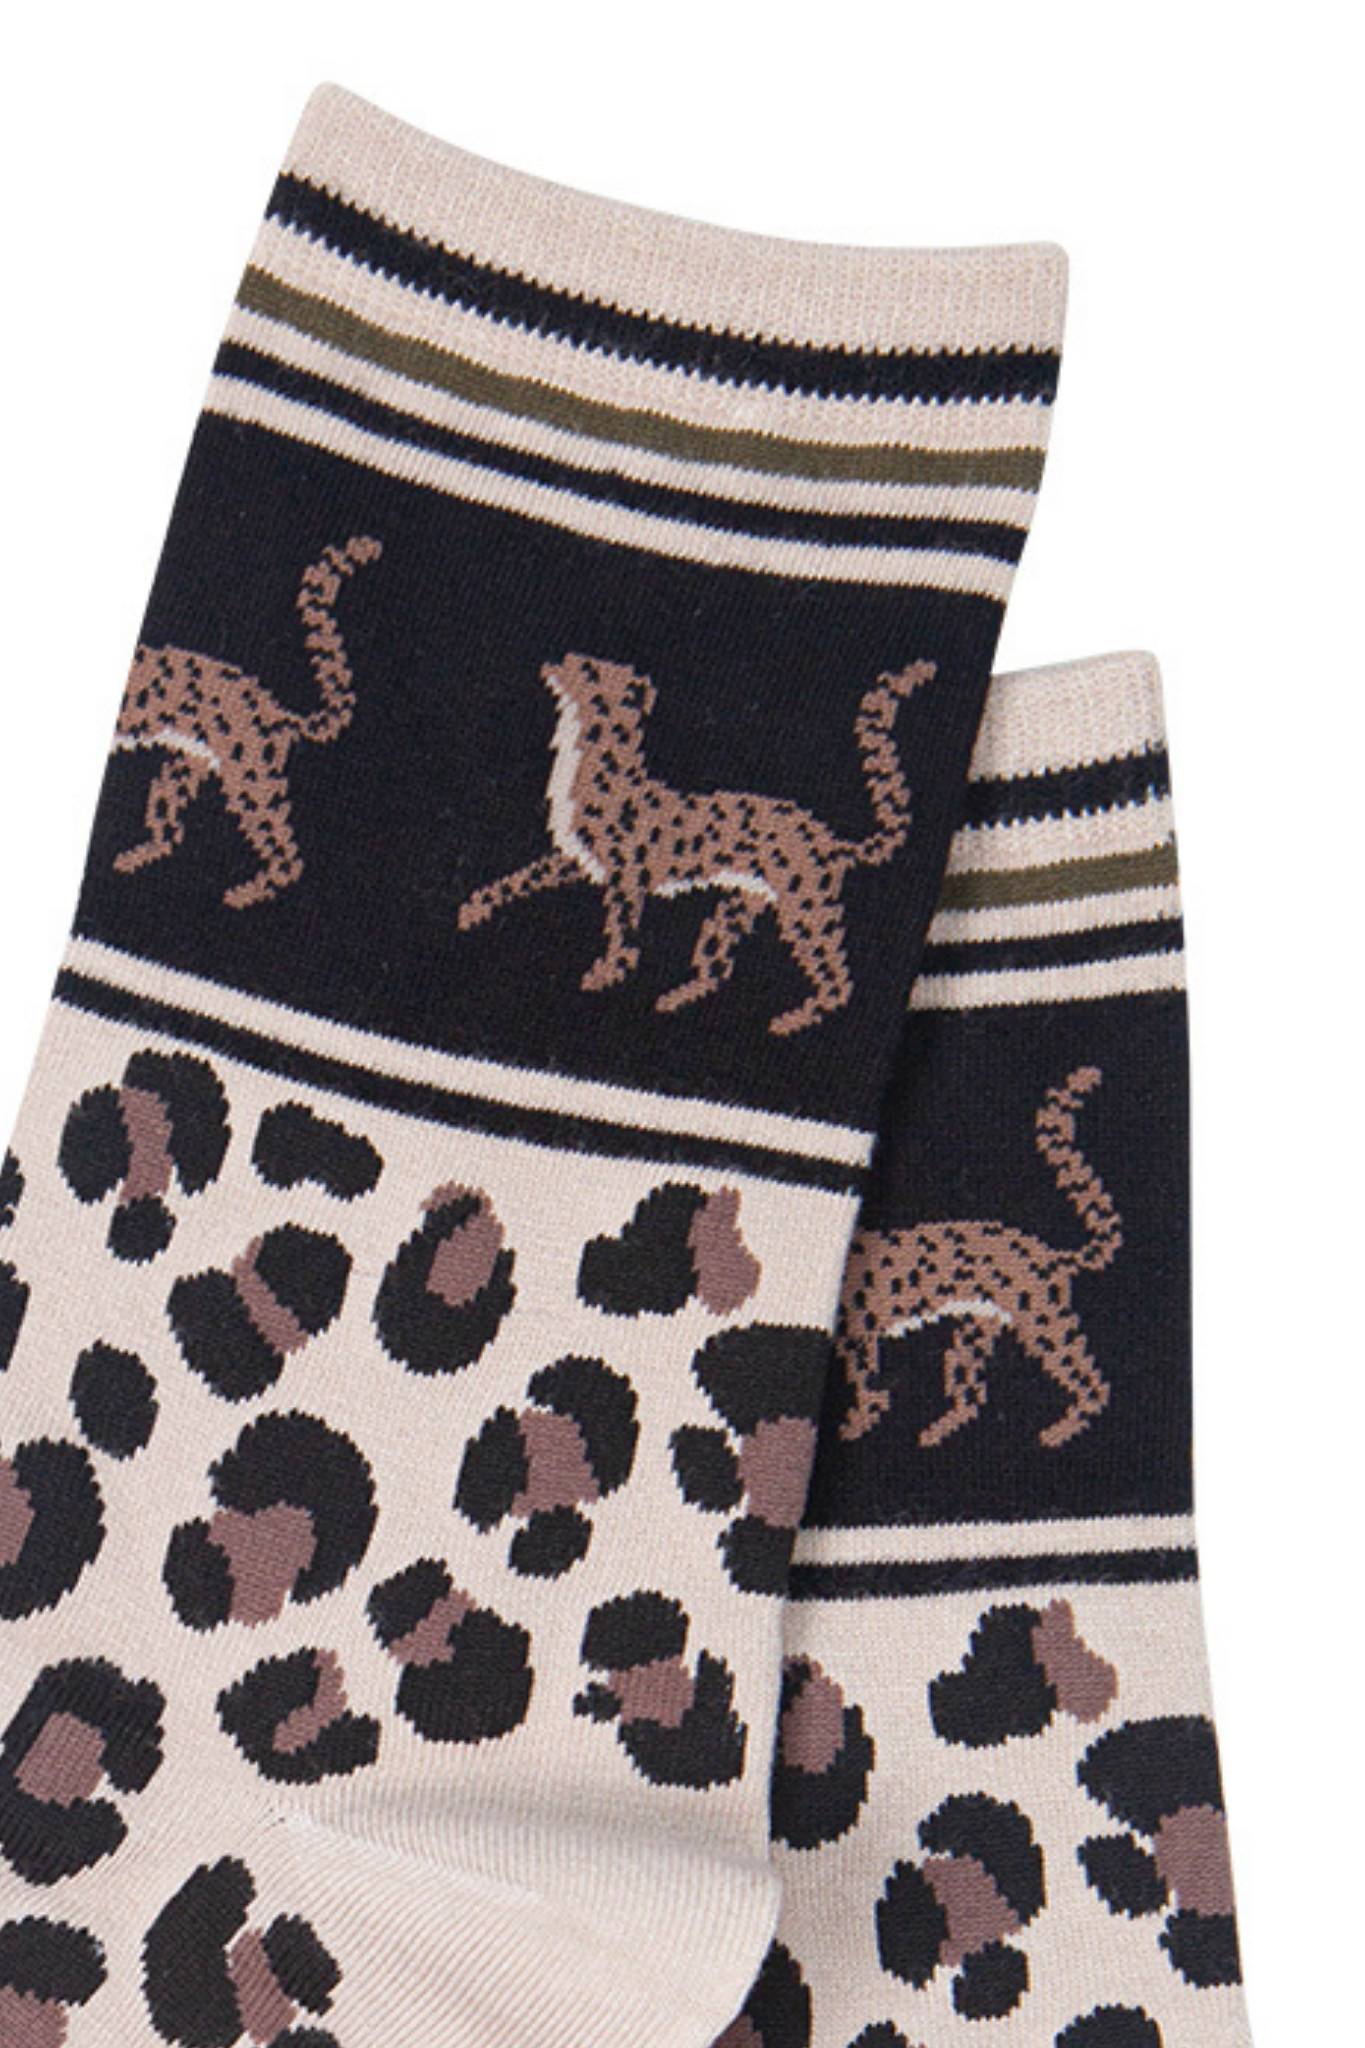 close up of the cheetah print and cheetah cat pattern